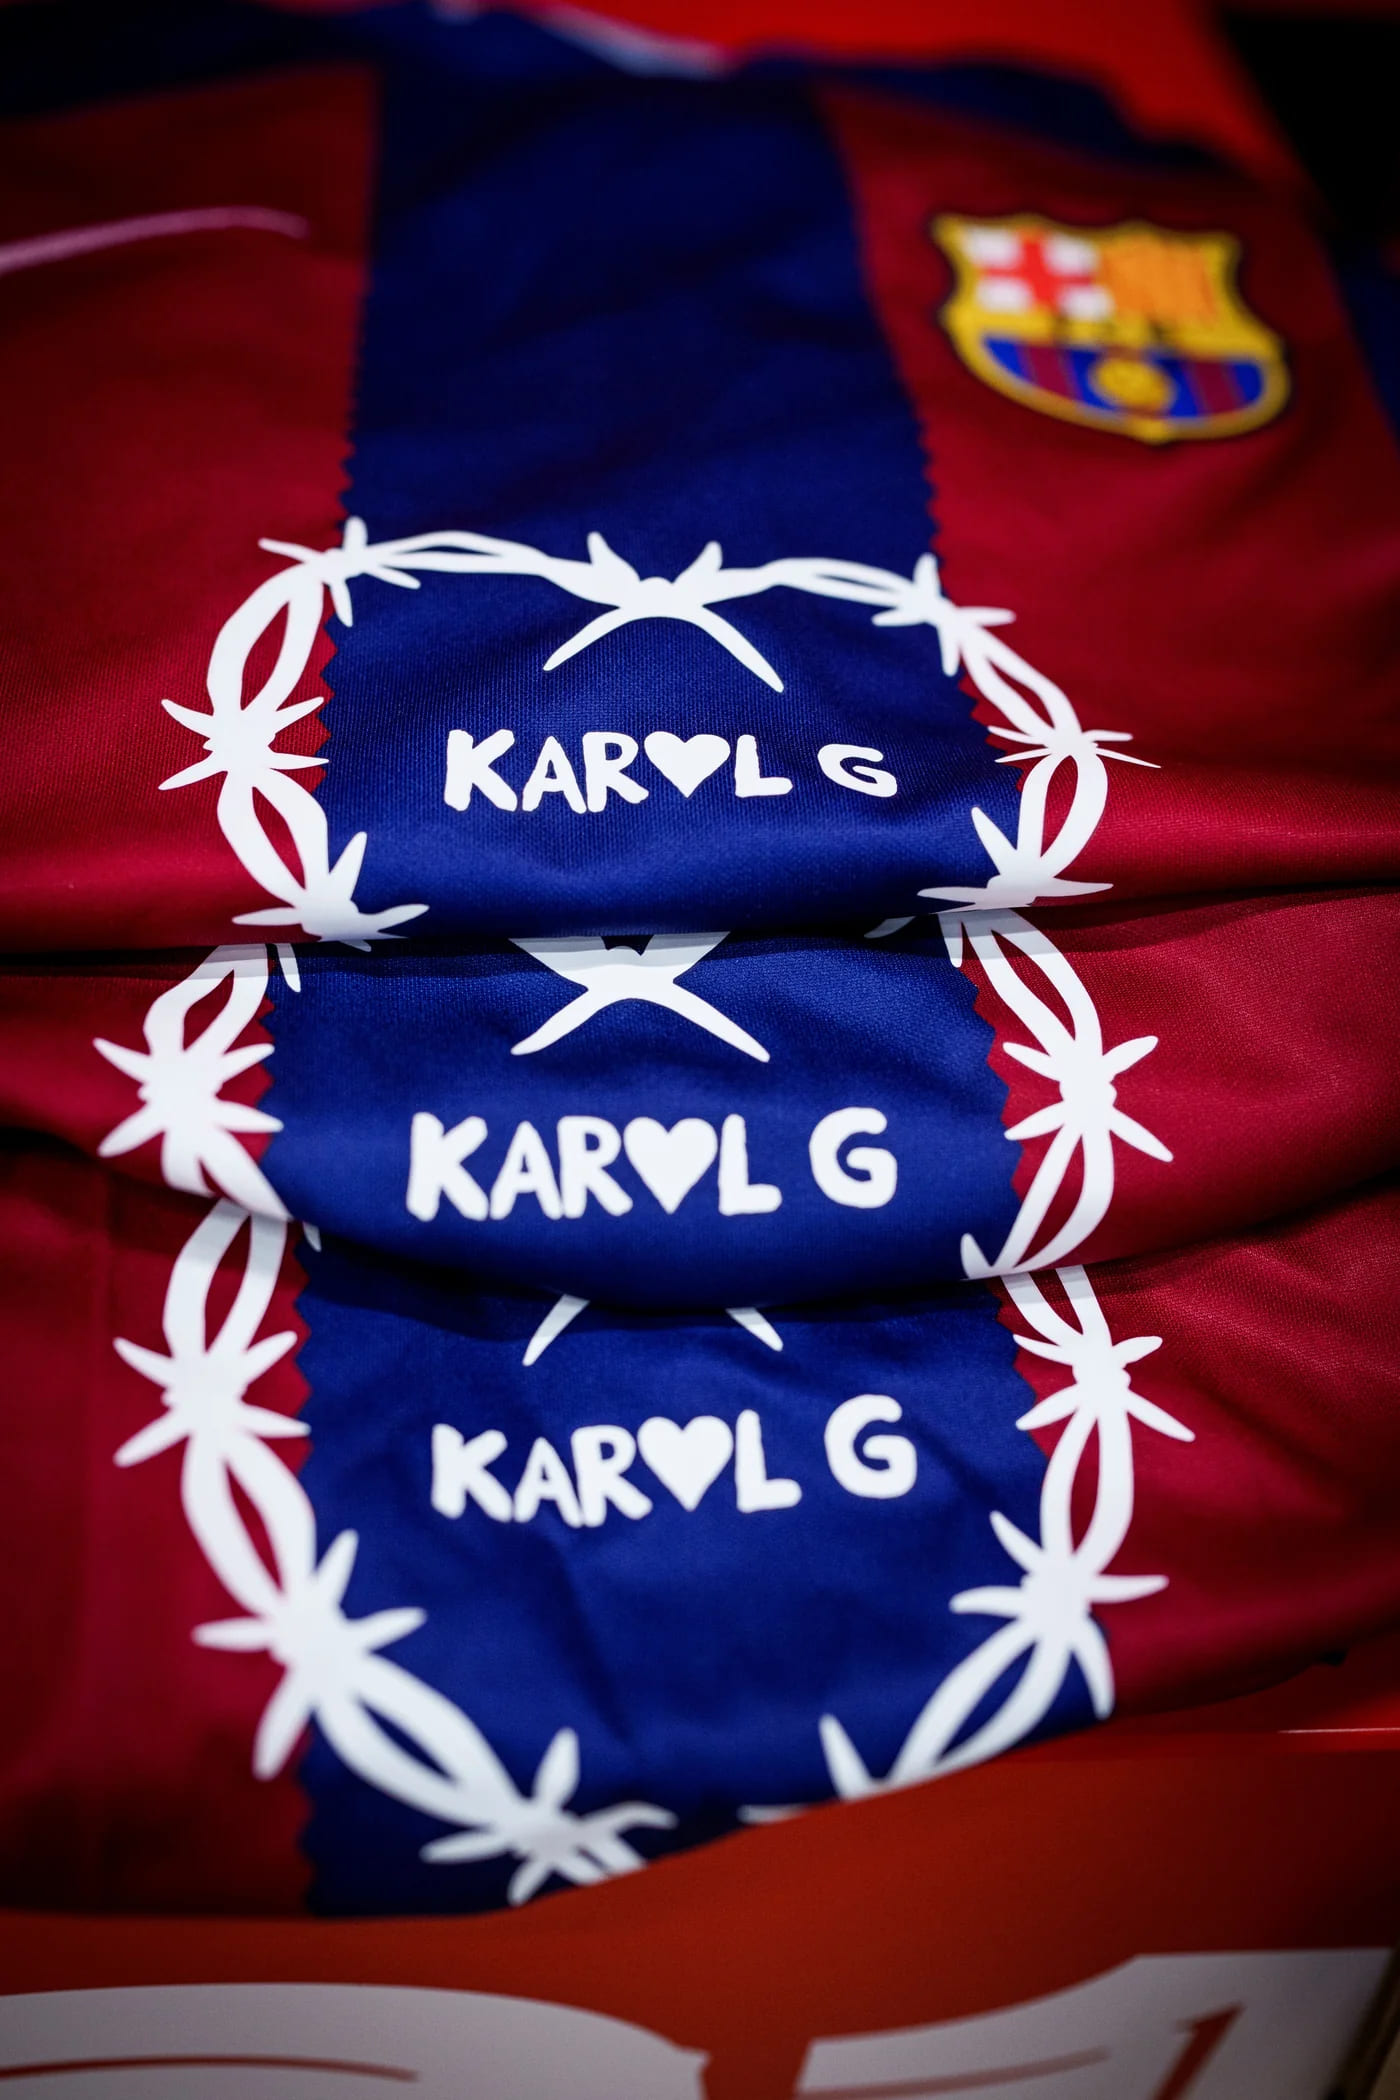 barcelona X karol G version aficionado en camisetasfutbol.mx.jpg